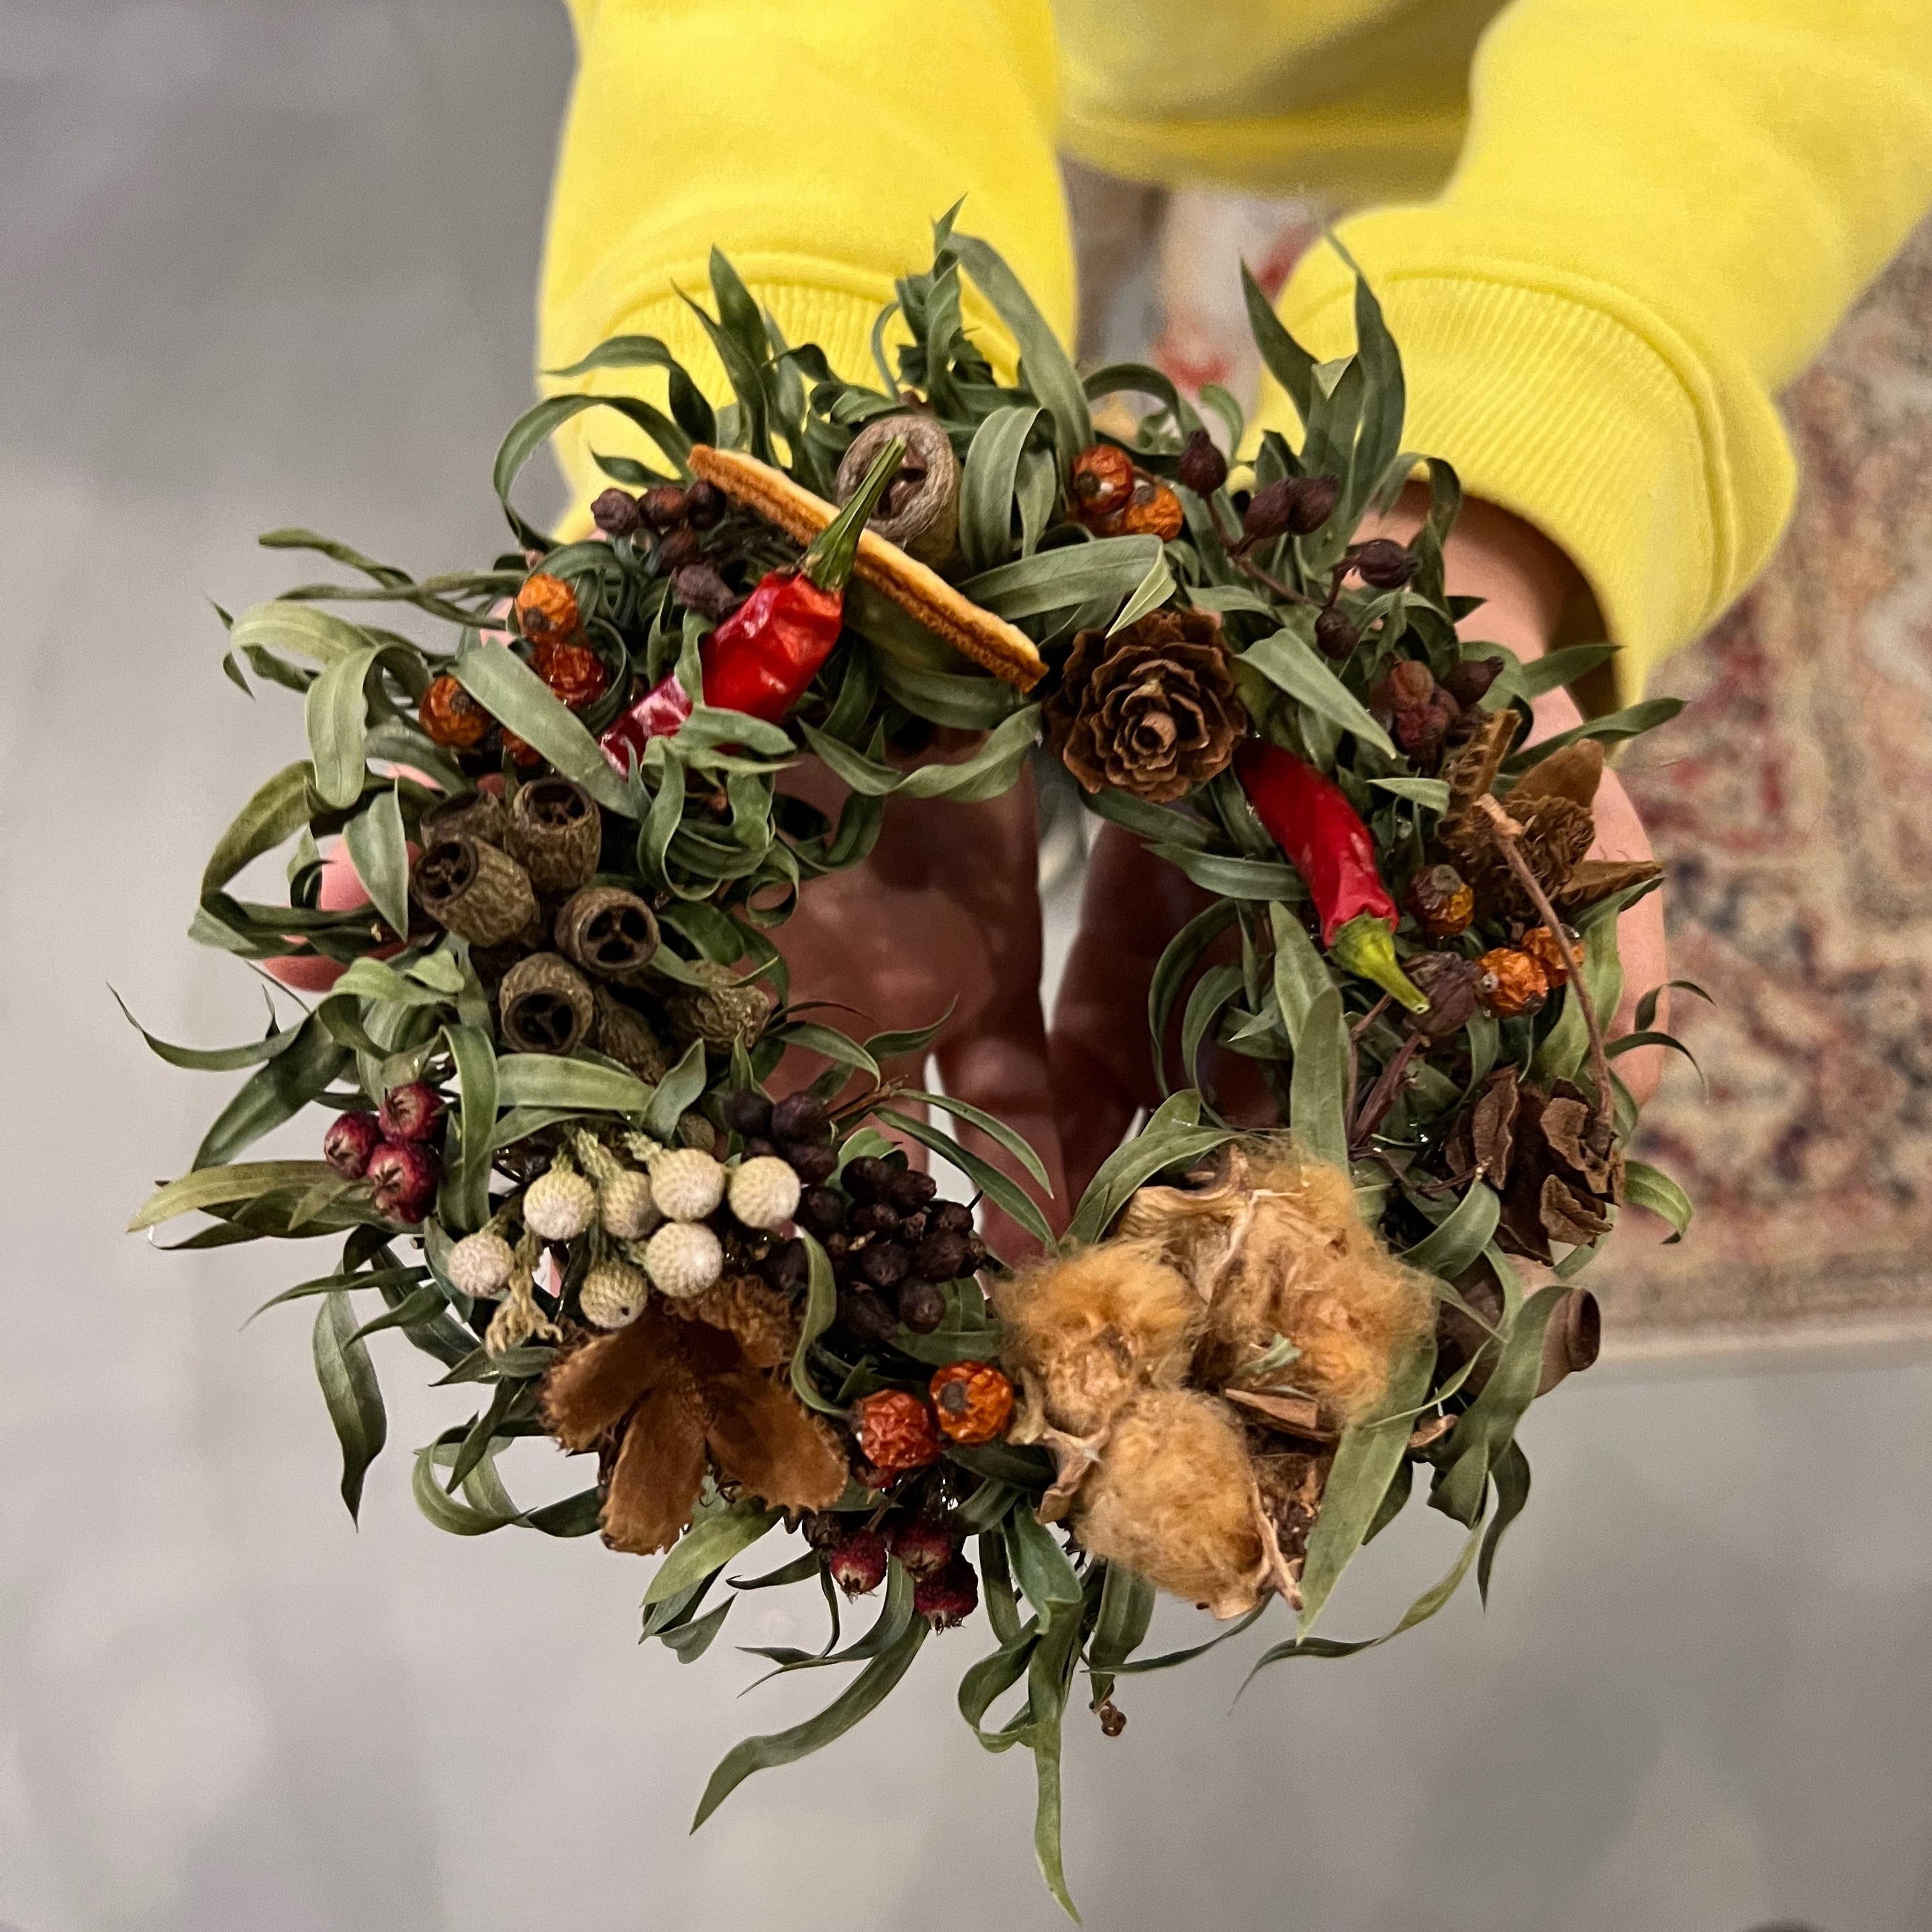 クリスマスリース☆Dried flower wreath ミニリース⭐︎ドライフラワーリース ドアリース クリスマス飾り オーナメント/0362021  number12